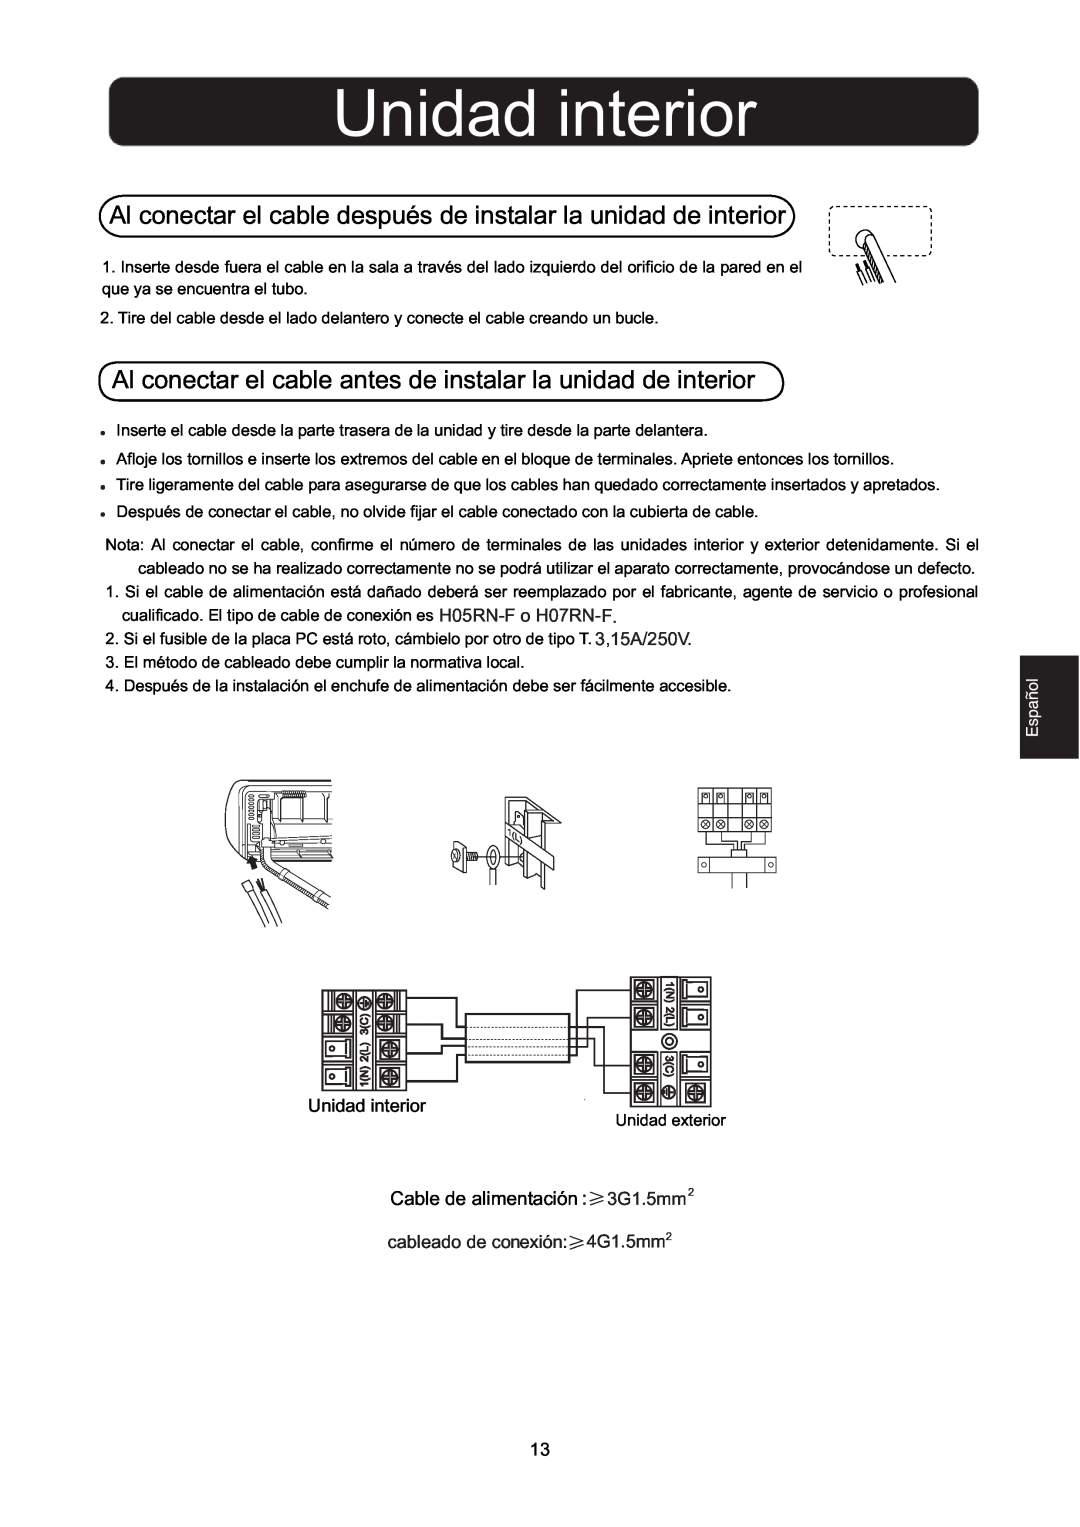 Hitachi HSU-09RD03/R2(SDB), HSU-12RD03/R2(SDB) installation manual Unidad interior, Cable de alimentación3G1.5mm2 